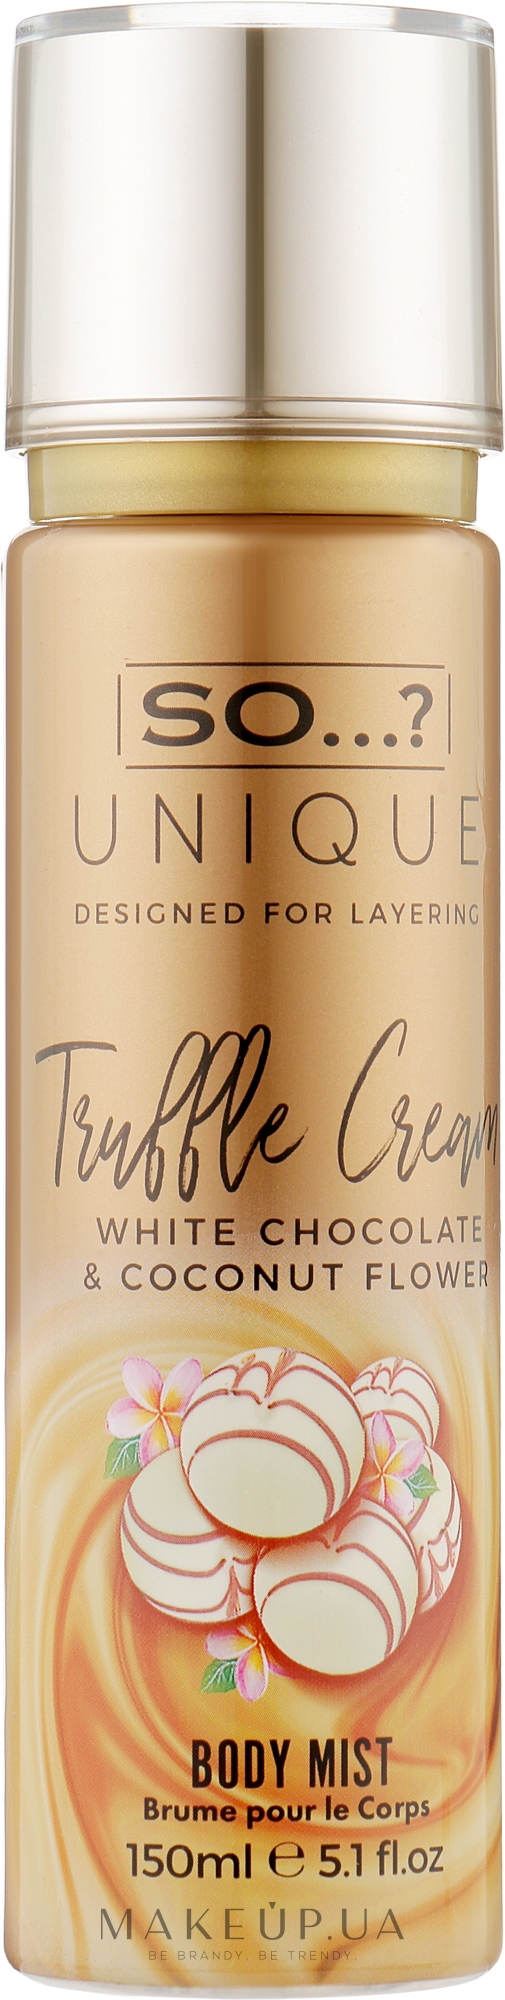 Спрей для тела - So…? Unique Truffle Cream Body Mist  — фото 150ml